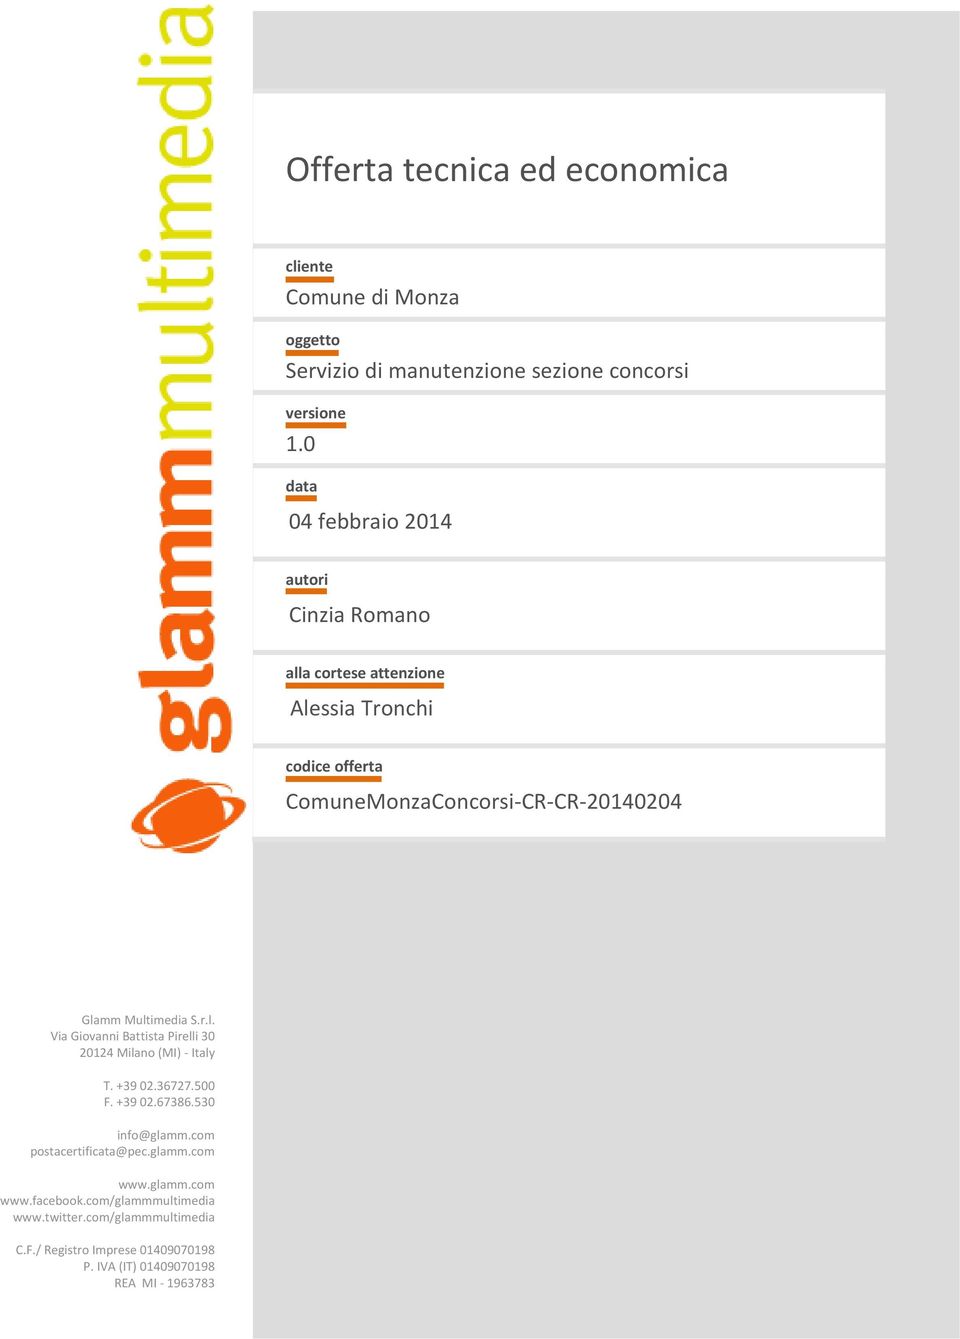 Multimedia S.r.l. Via Giovanni Battista Pirelli 30 20124 Milano (MI) Italy T. +39 02.36727.500 F. +39 02.67386.530 info@glamm.